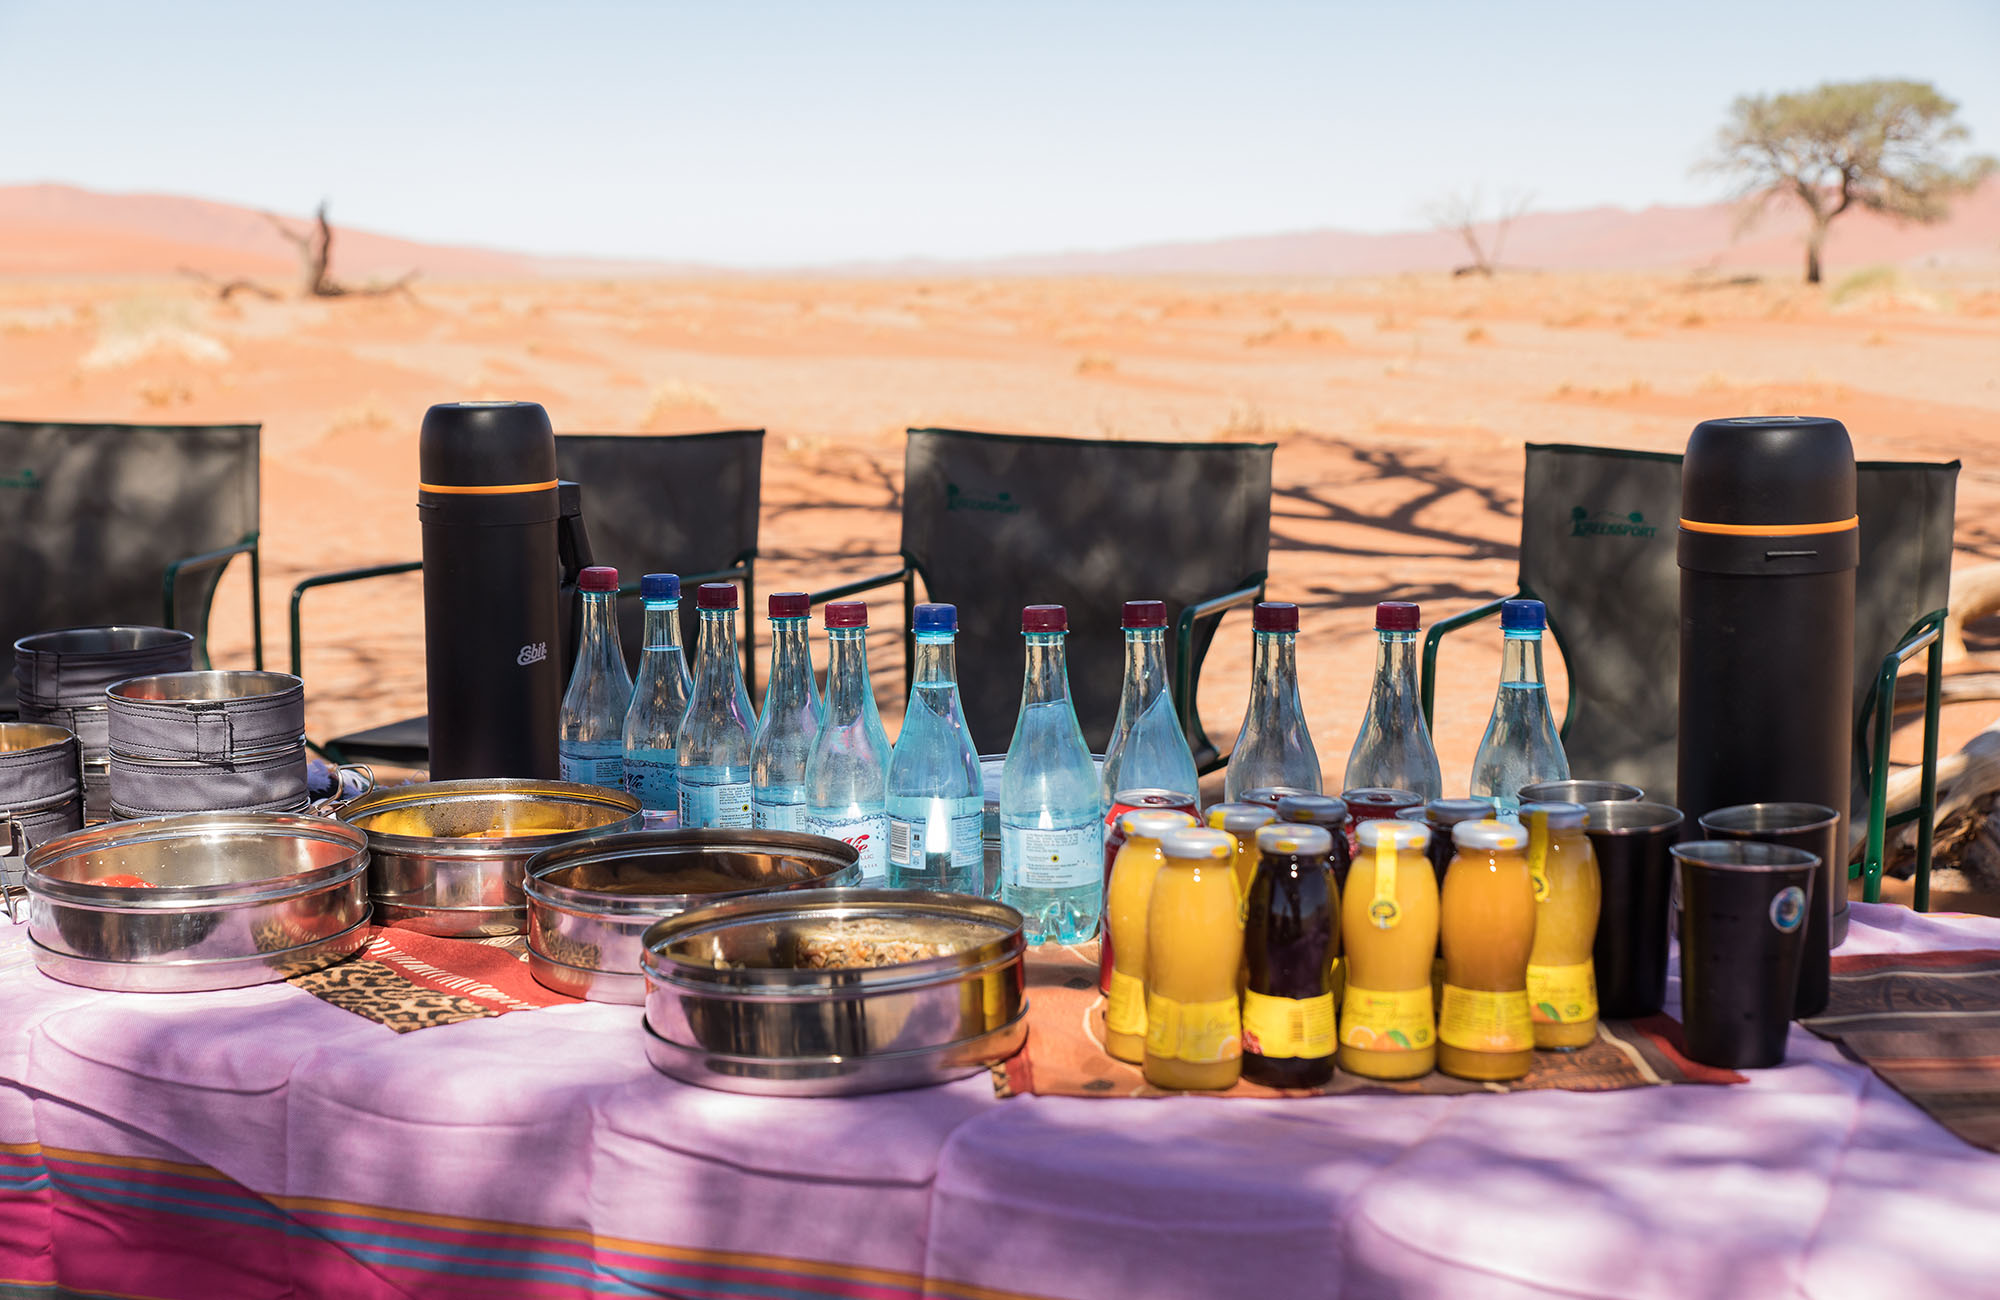 Namib Desert Campsite